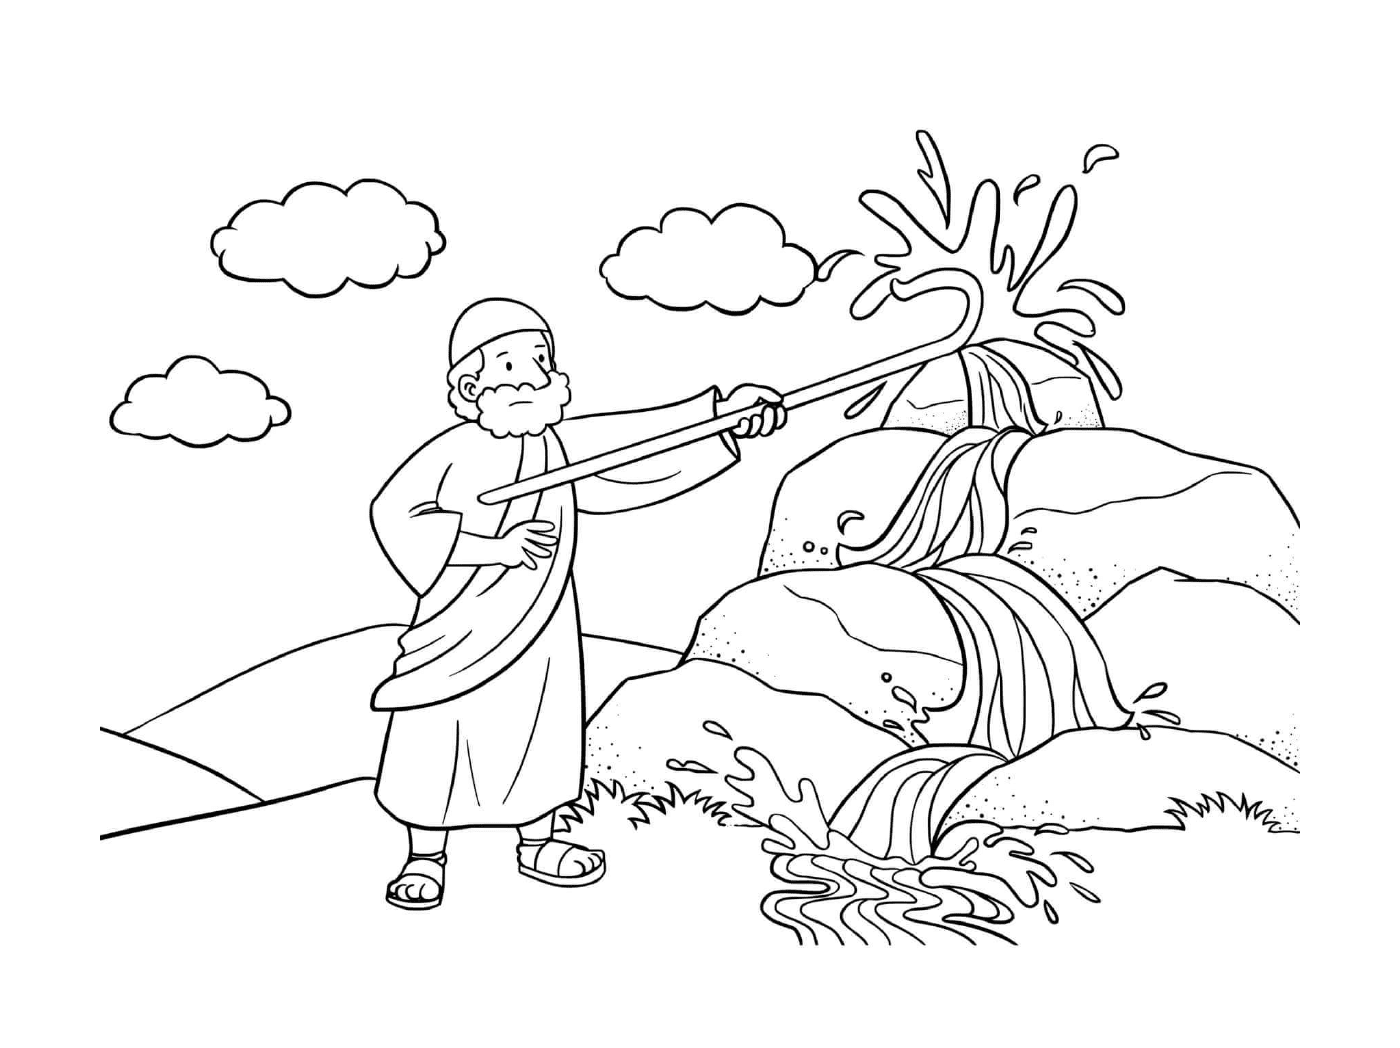   Rocher de Moïse, homme avec un tuyau d'incendie 